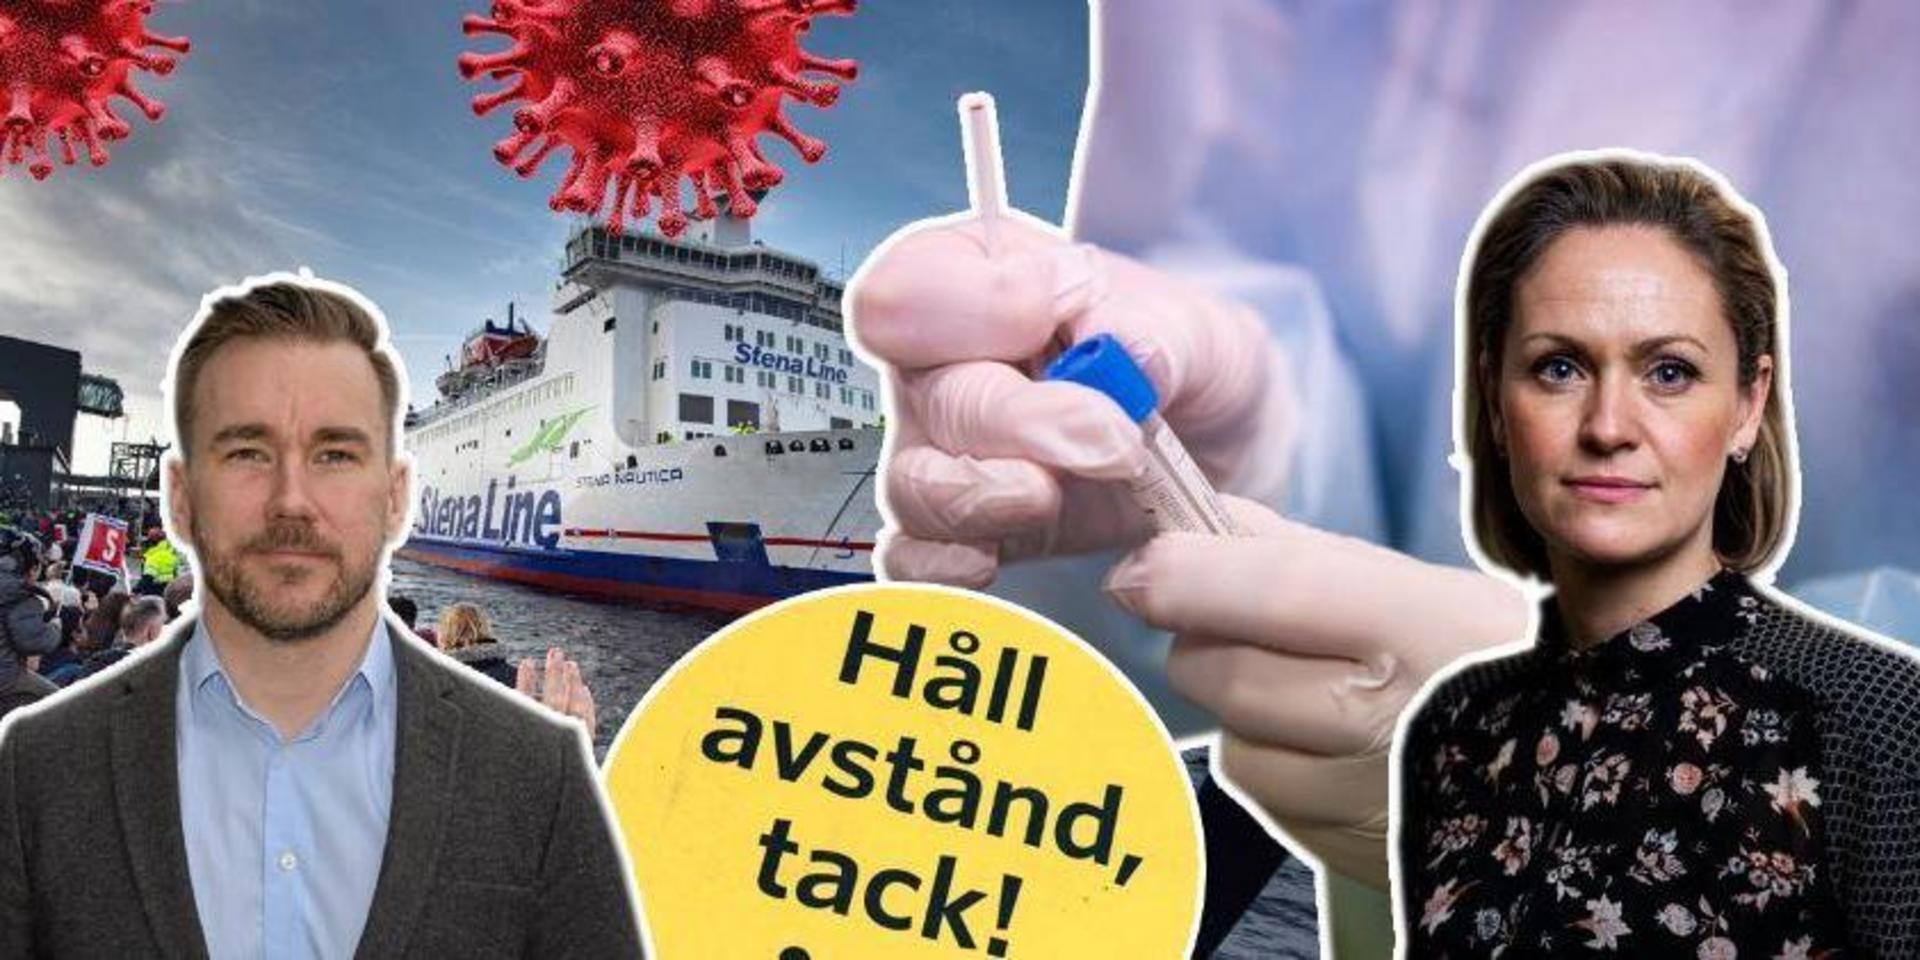 Det är svårt att summera näringslivsåret 2020, tycker Kristian Ryberg, regionchef på Svenskt Näringsliv i Halland och Lina Siljegård, tillväxtdirektör på Halmstads kommun. Krisen som coronaviruset orsakar påverkar branscher olika. 